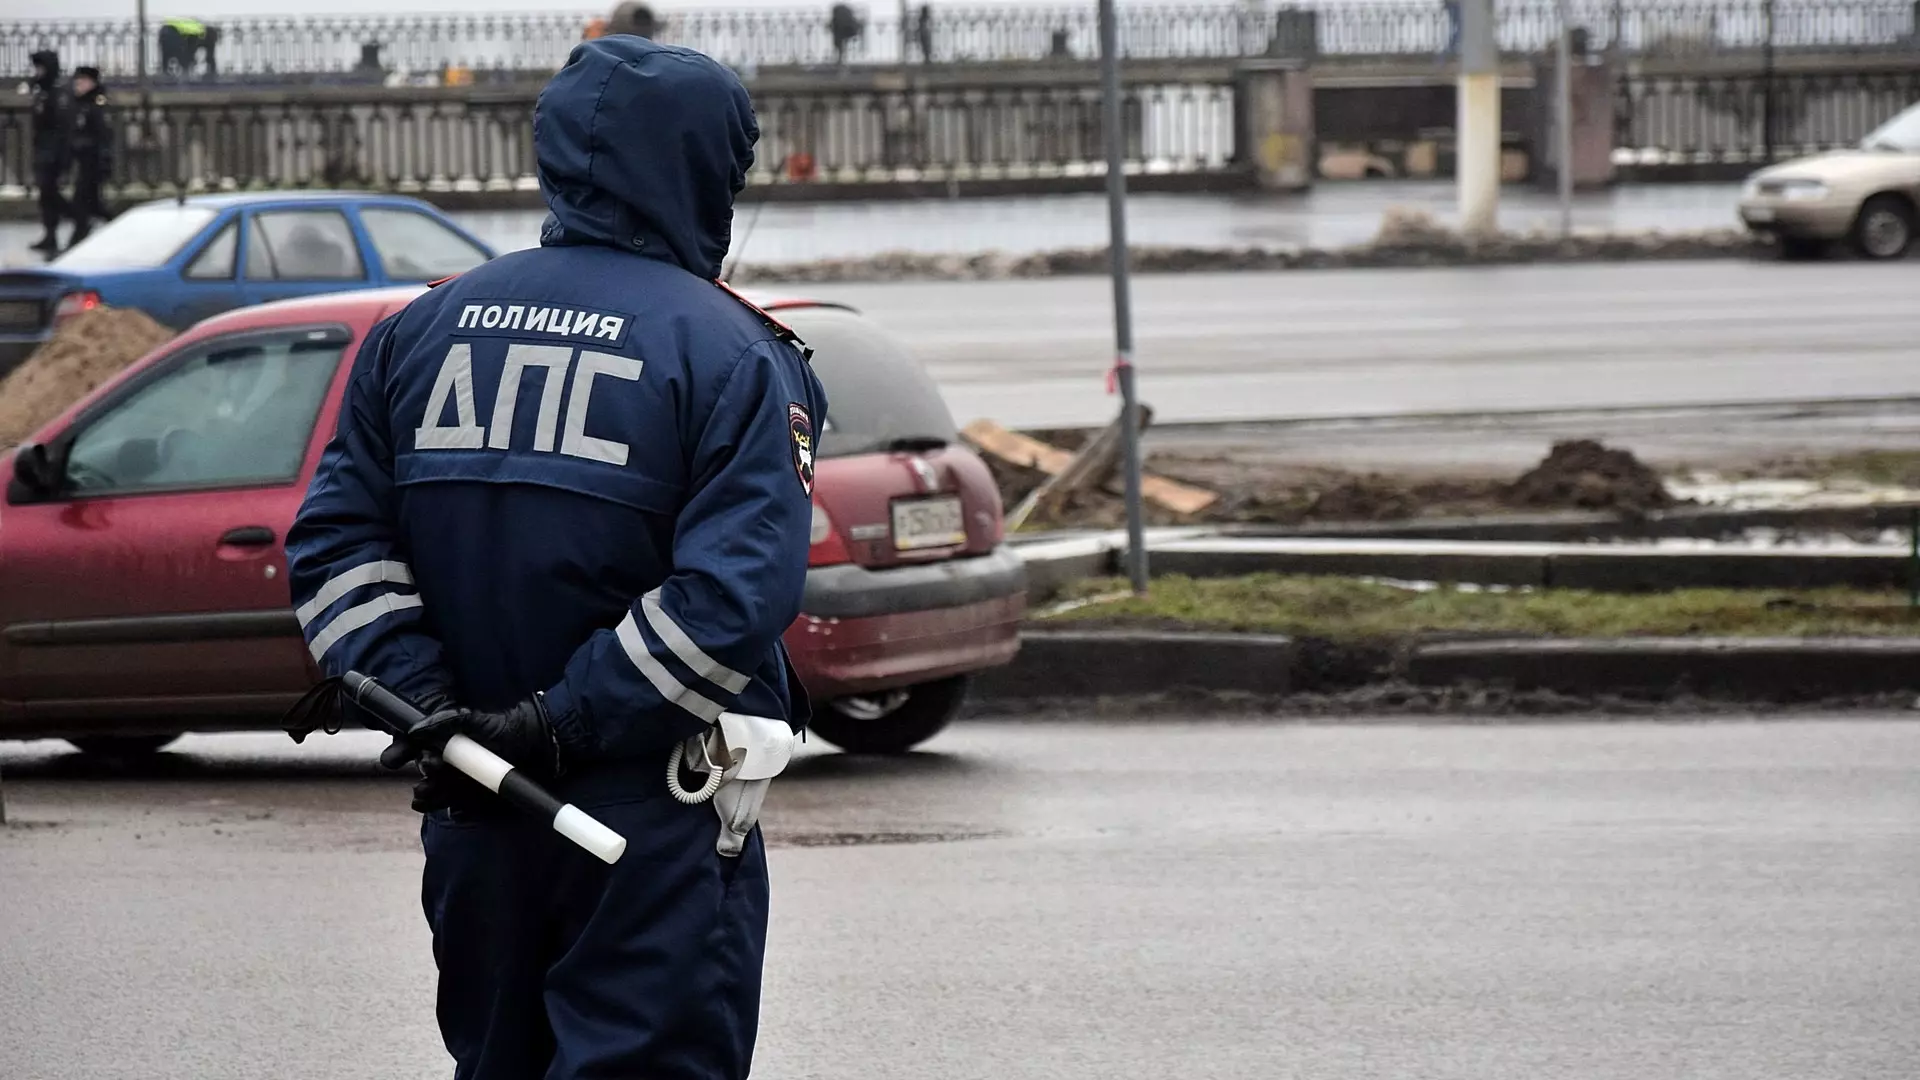 Кировградская полиция задержала пьяного водителя без прав из Екатеринбурга